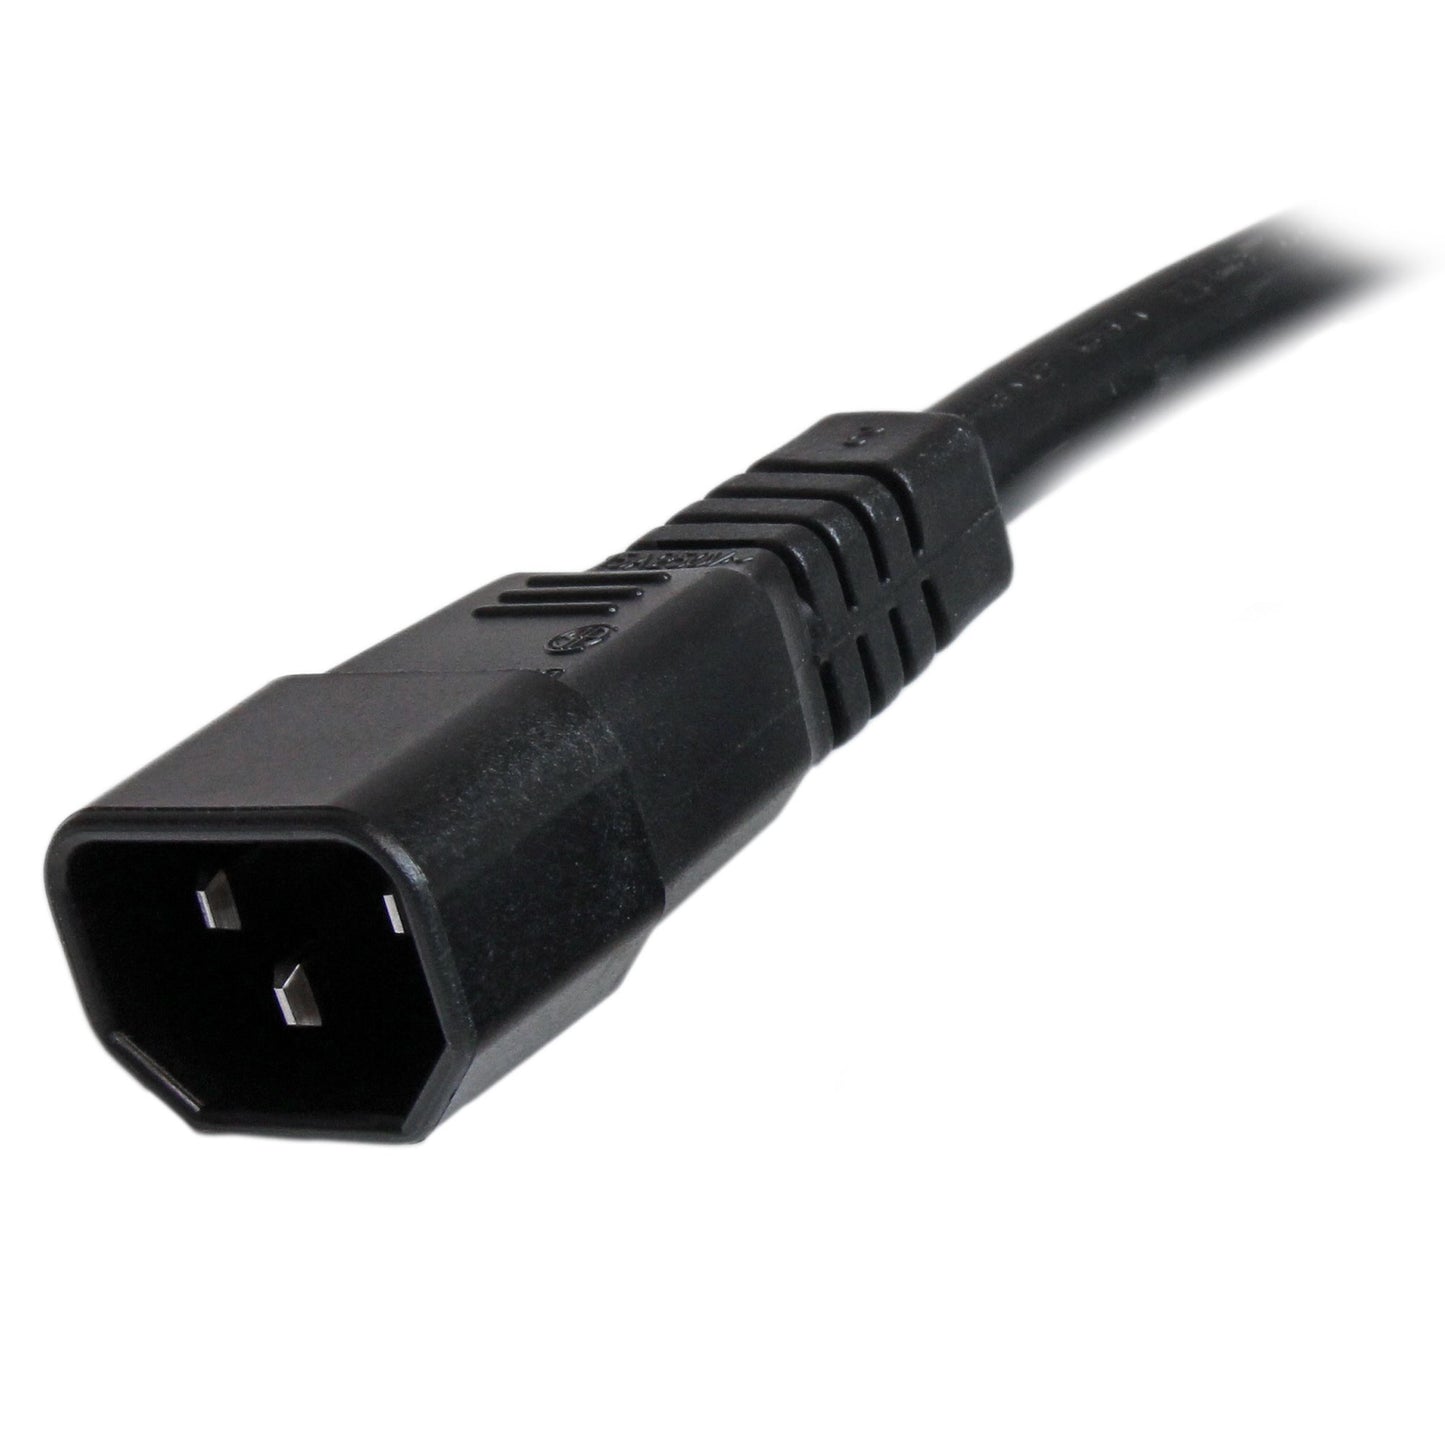 Cable de 1.8m (6 pies) STARTECH de Extensión de Servicio Pesado, Cable Alargador de Alimentación IEC 320 C14 a IEC 320 C15, 15A 250V